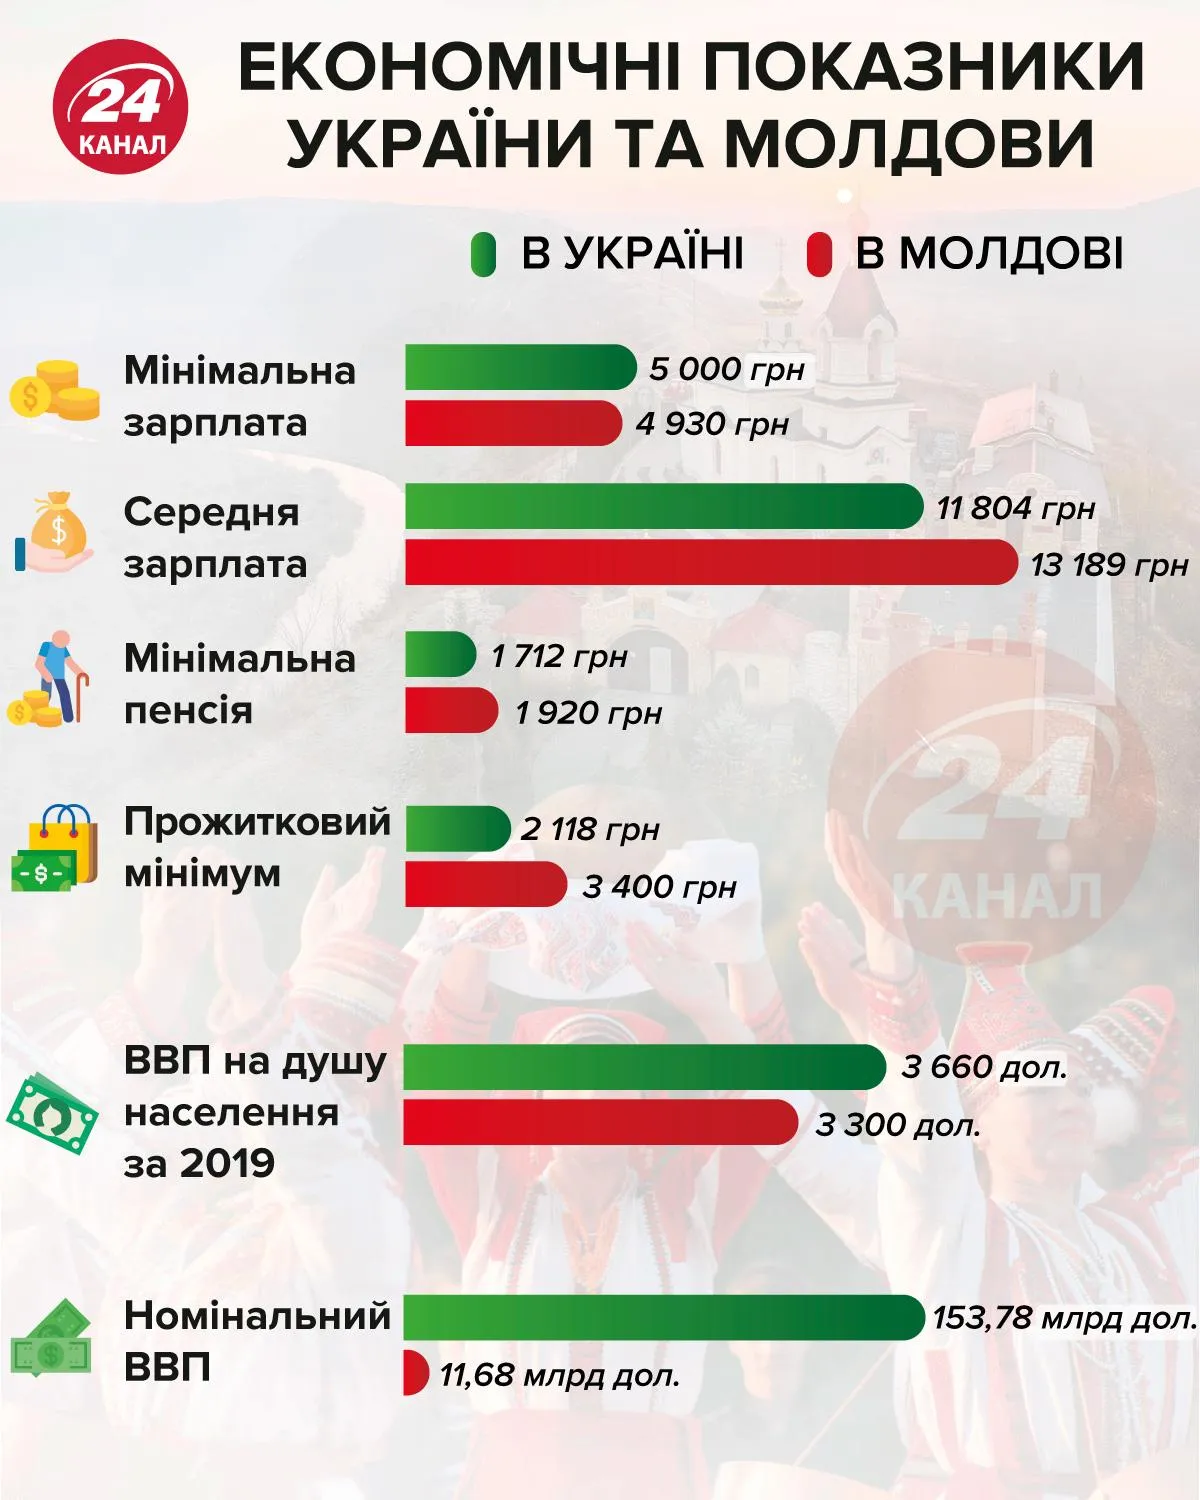 Экономические показатели Молдовы и Украины инфографика 24 канал